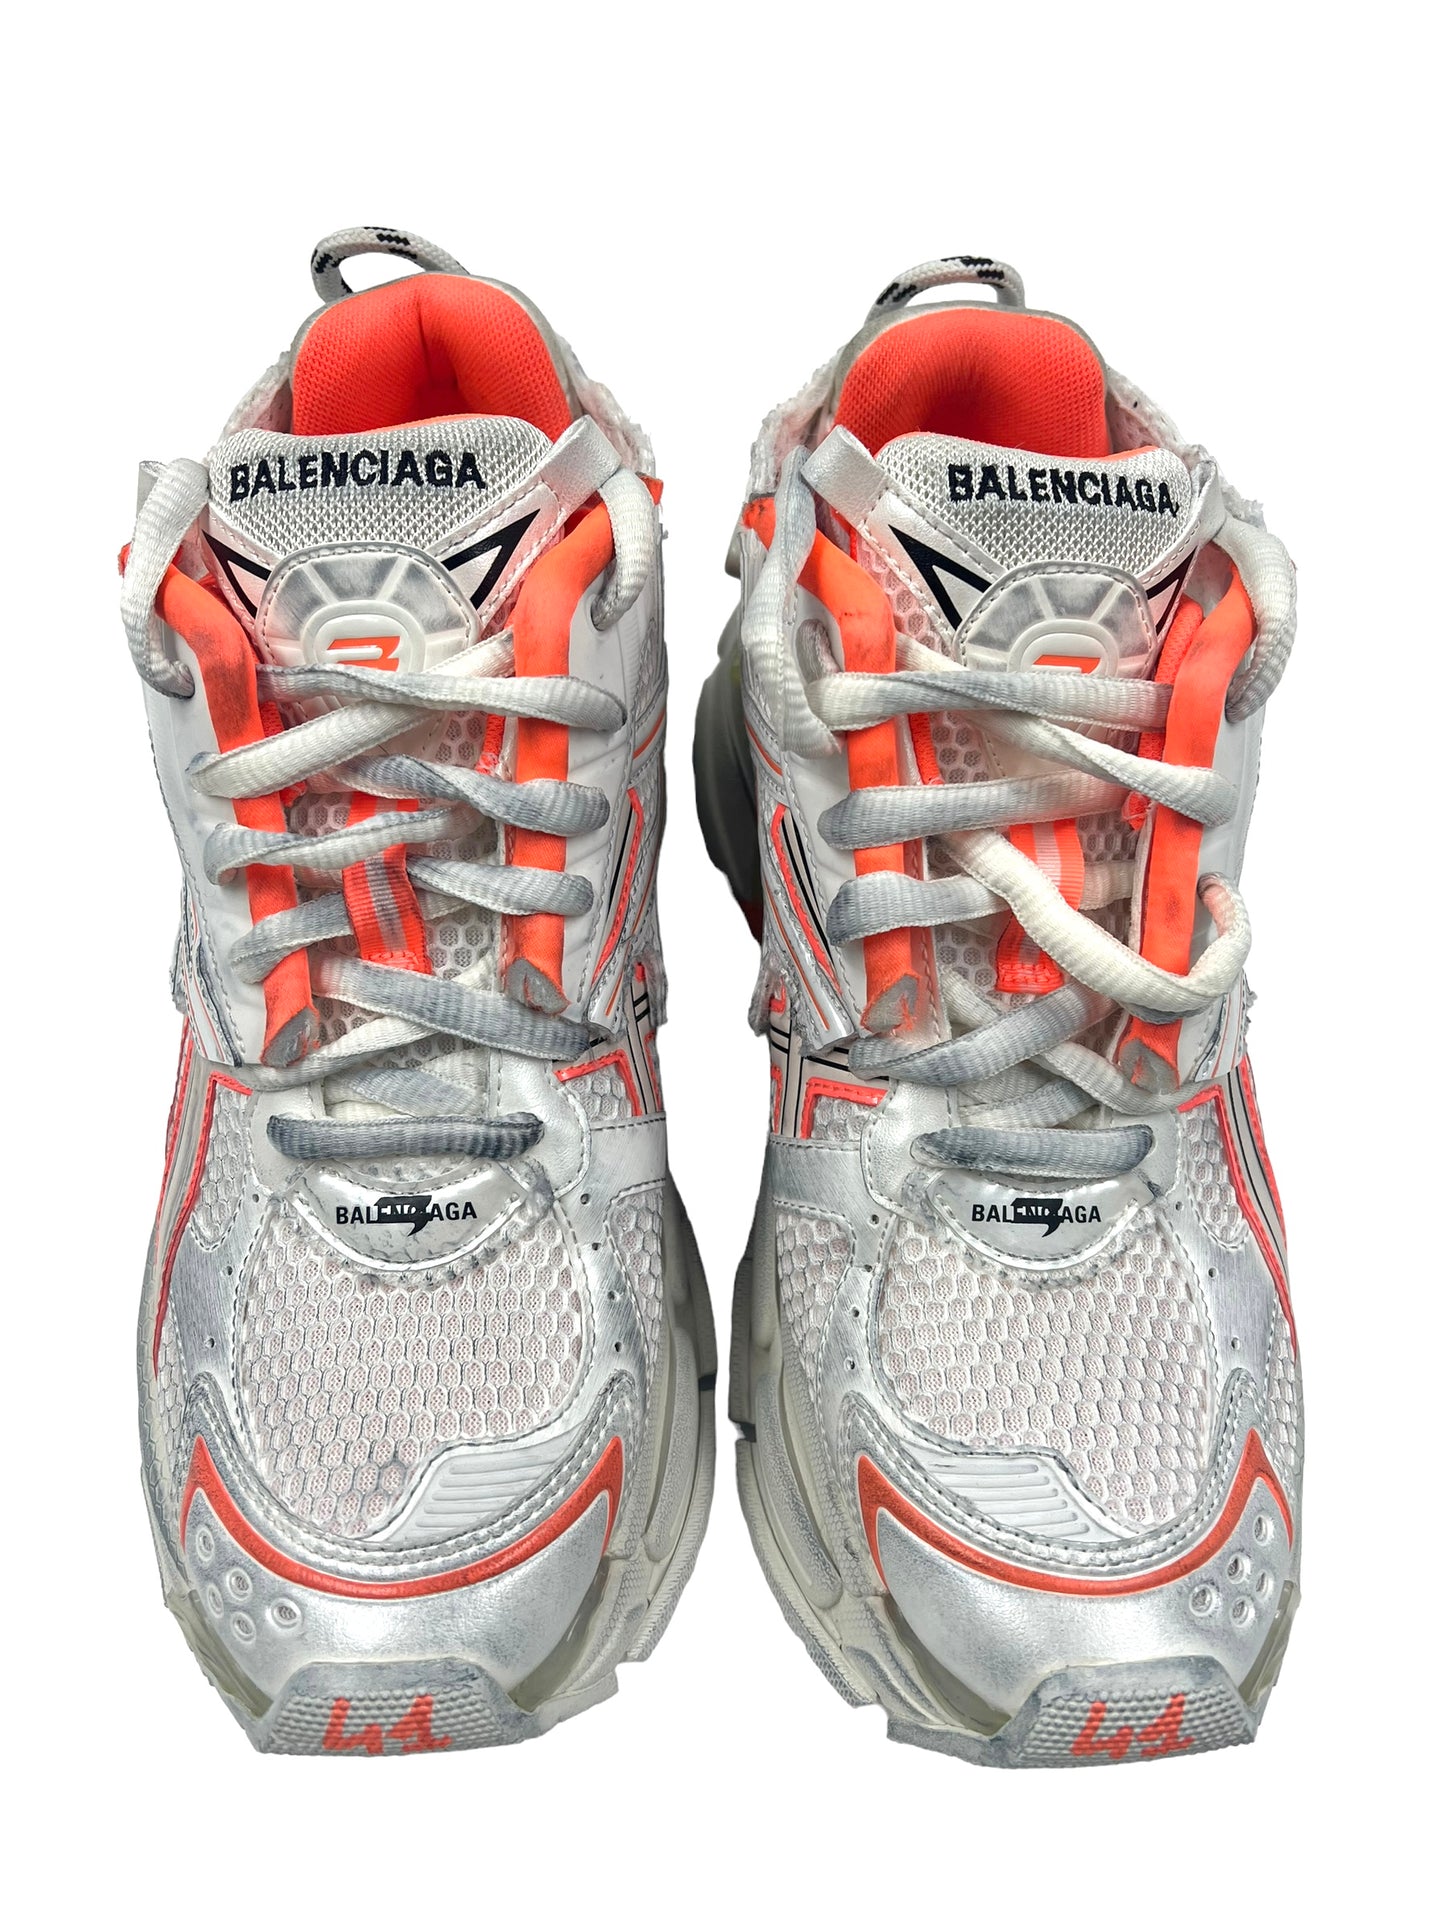 Balenciaga Women's Size 41 Bicolor Fluo Runner Sneakers